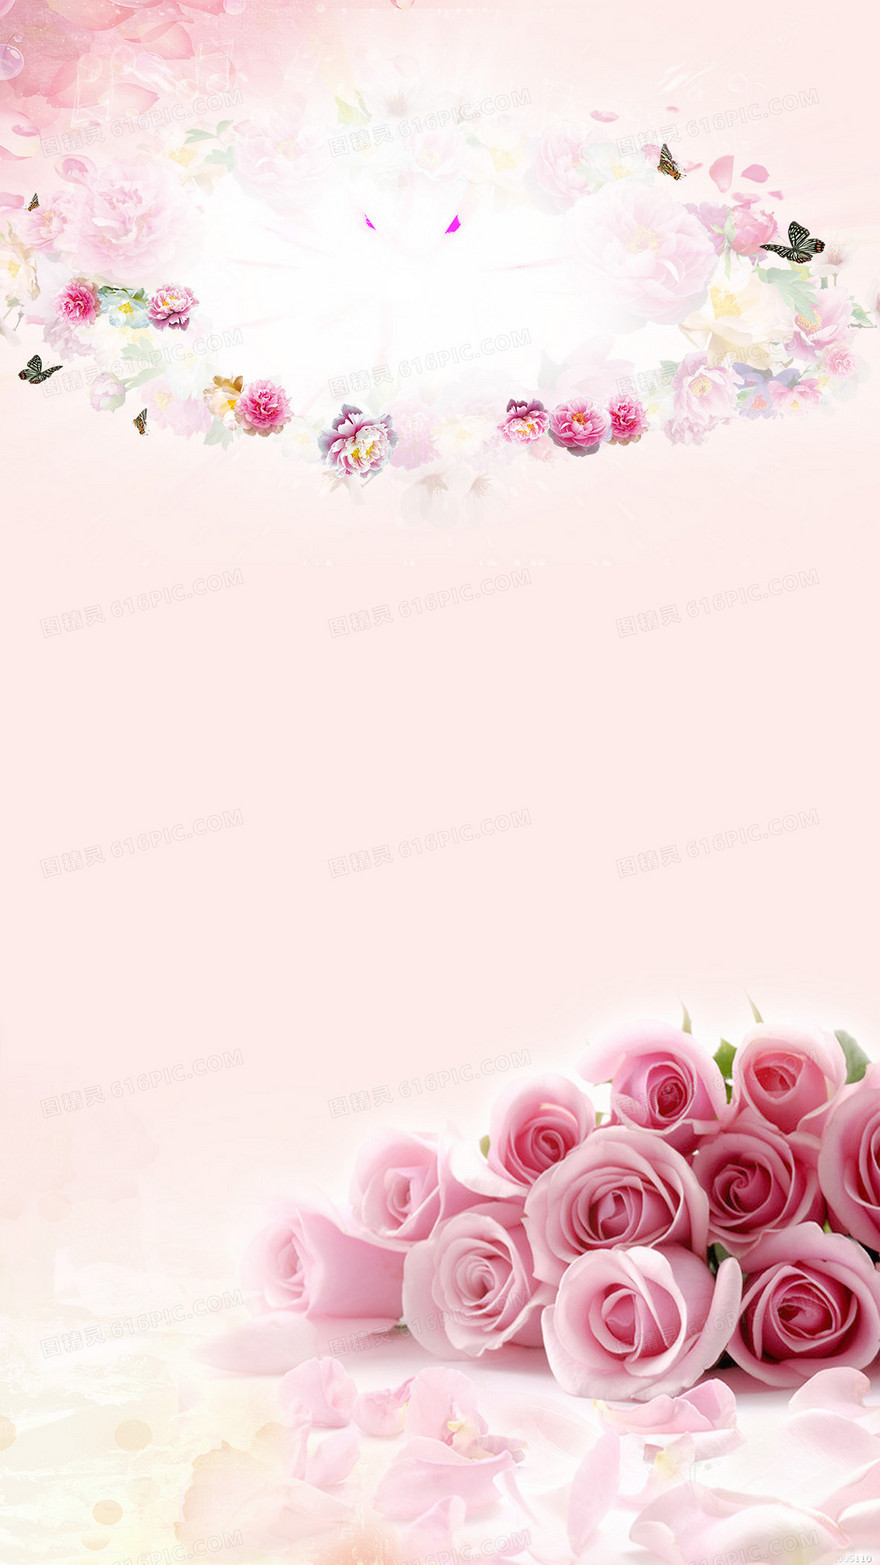 粉色浪漫玫瑰唯美H5背景素材